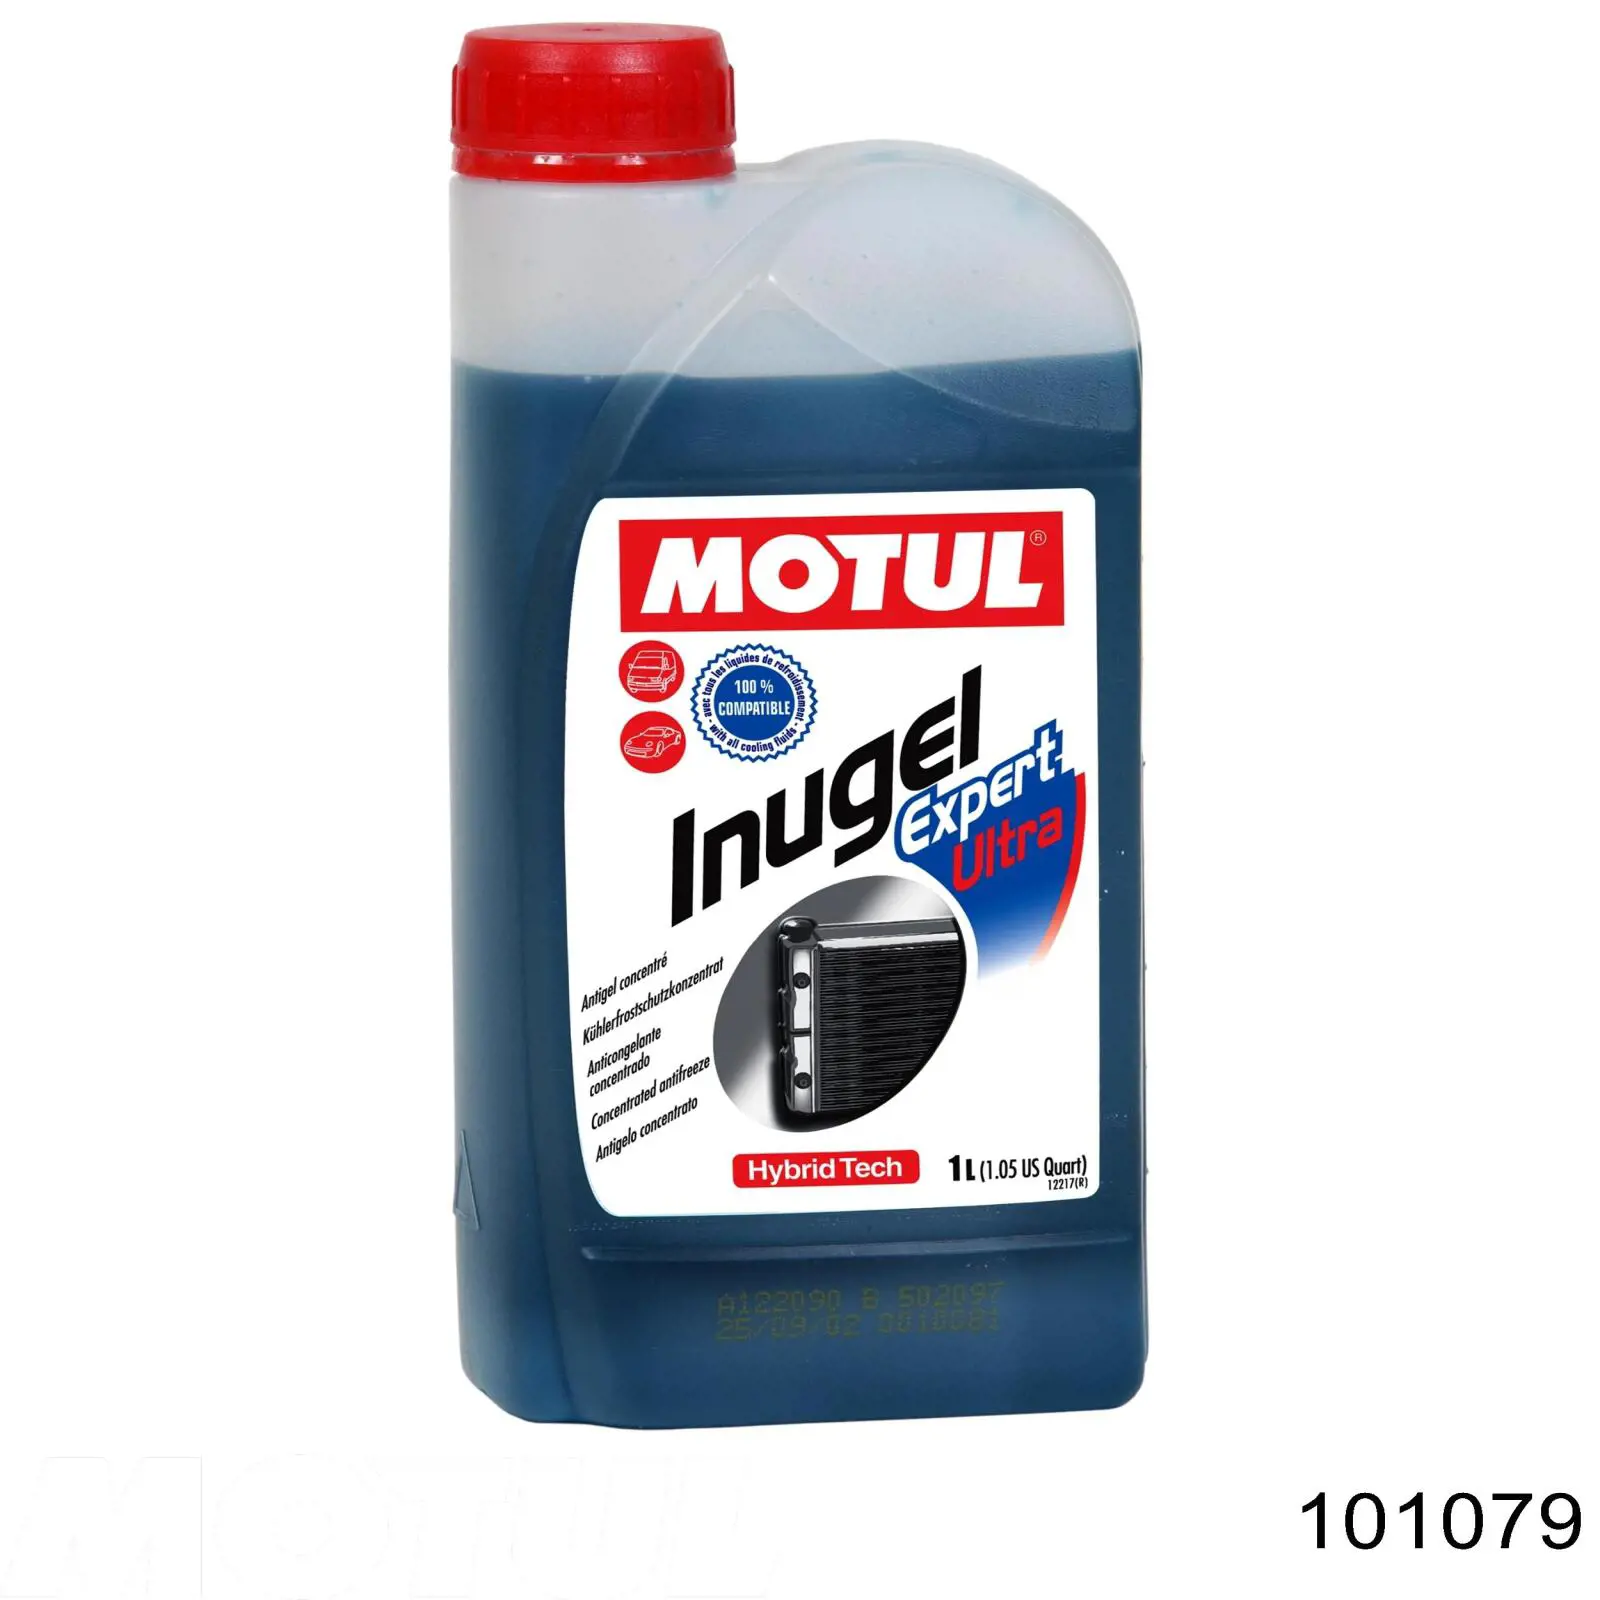 Антифриз Motul Inugel Expert Ultra Сине-зеленый -54 °C 1л (101079)